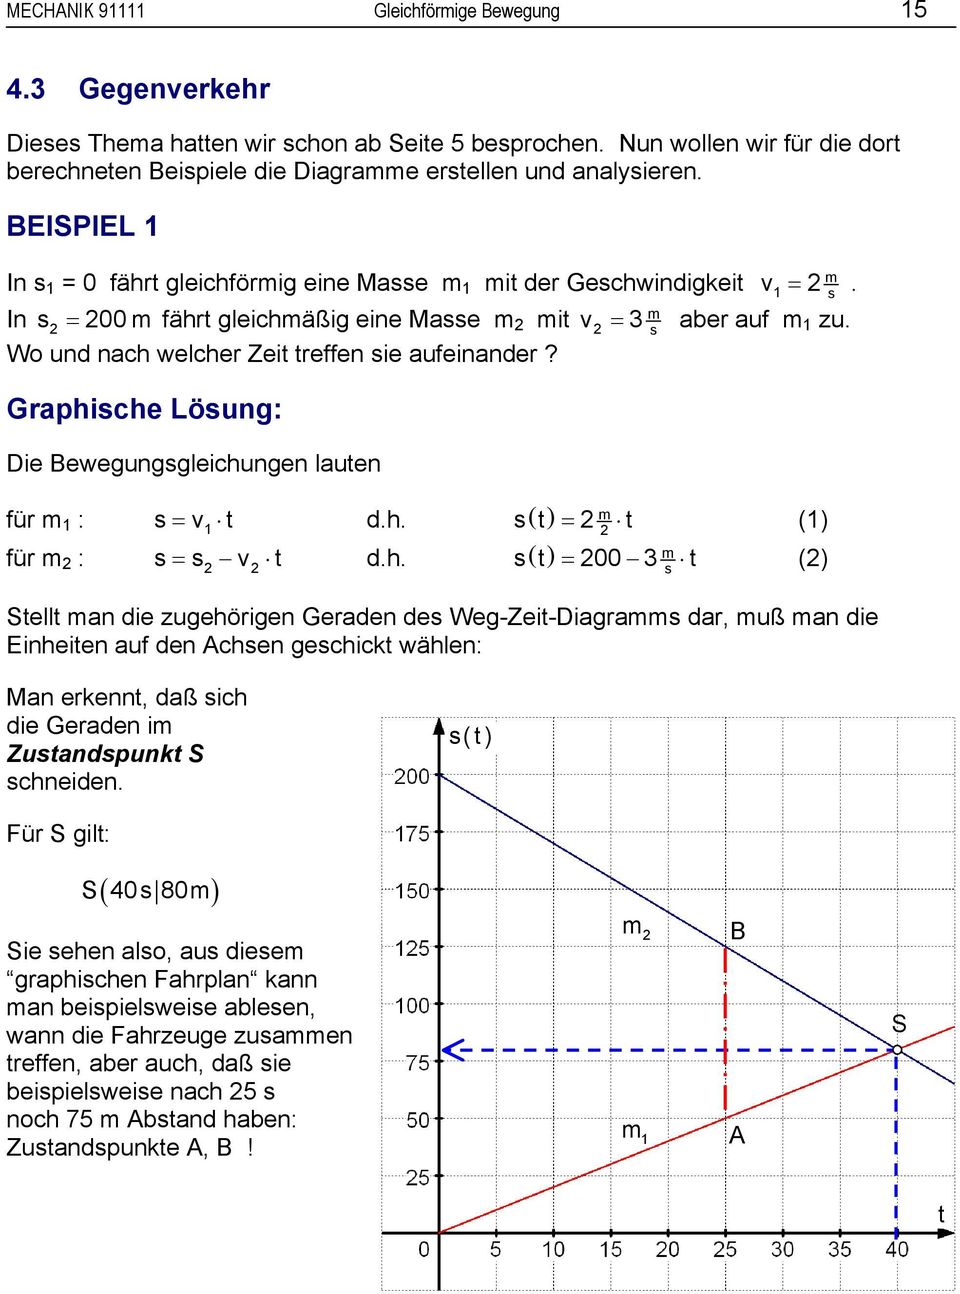 Graphiche Löung: Die Bewegunggleichungen lauen für 1 : = v1 d.h. ( ) = 2 (1) 2 für 2 : = 2 v2 d.h. ( ) = 200 3 (2) Sell an die zugehörigen Geraden de Weg-Zei-Diagra dar, uß an die Einheien auf den Achen gechick wählen: Man erkenn, daß ich die Geraden i Zuandpunk S chneiden.